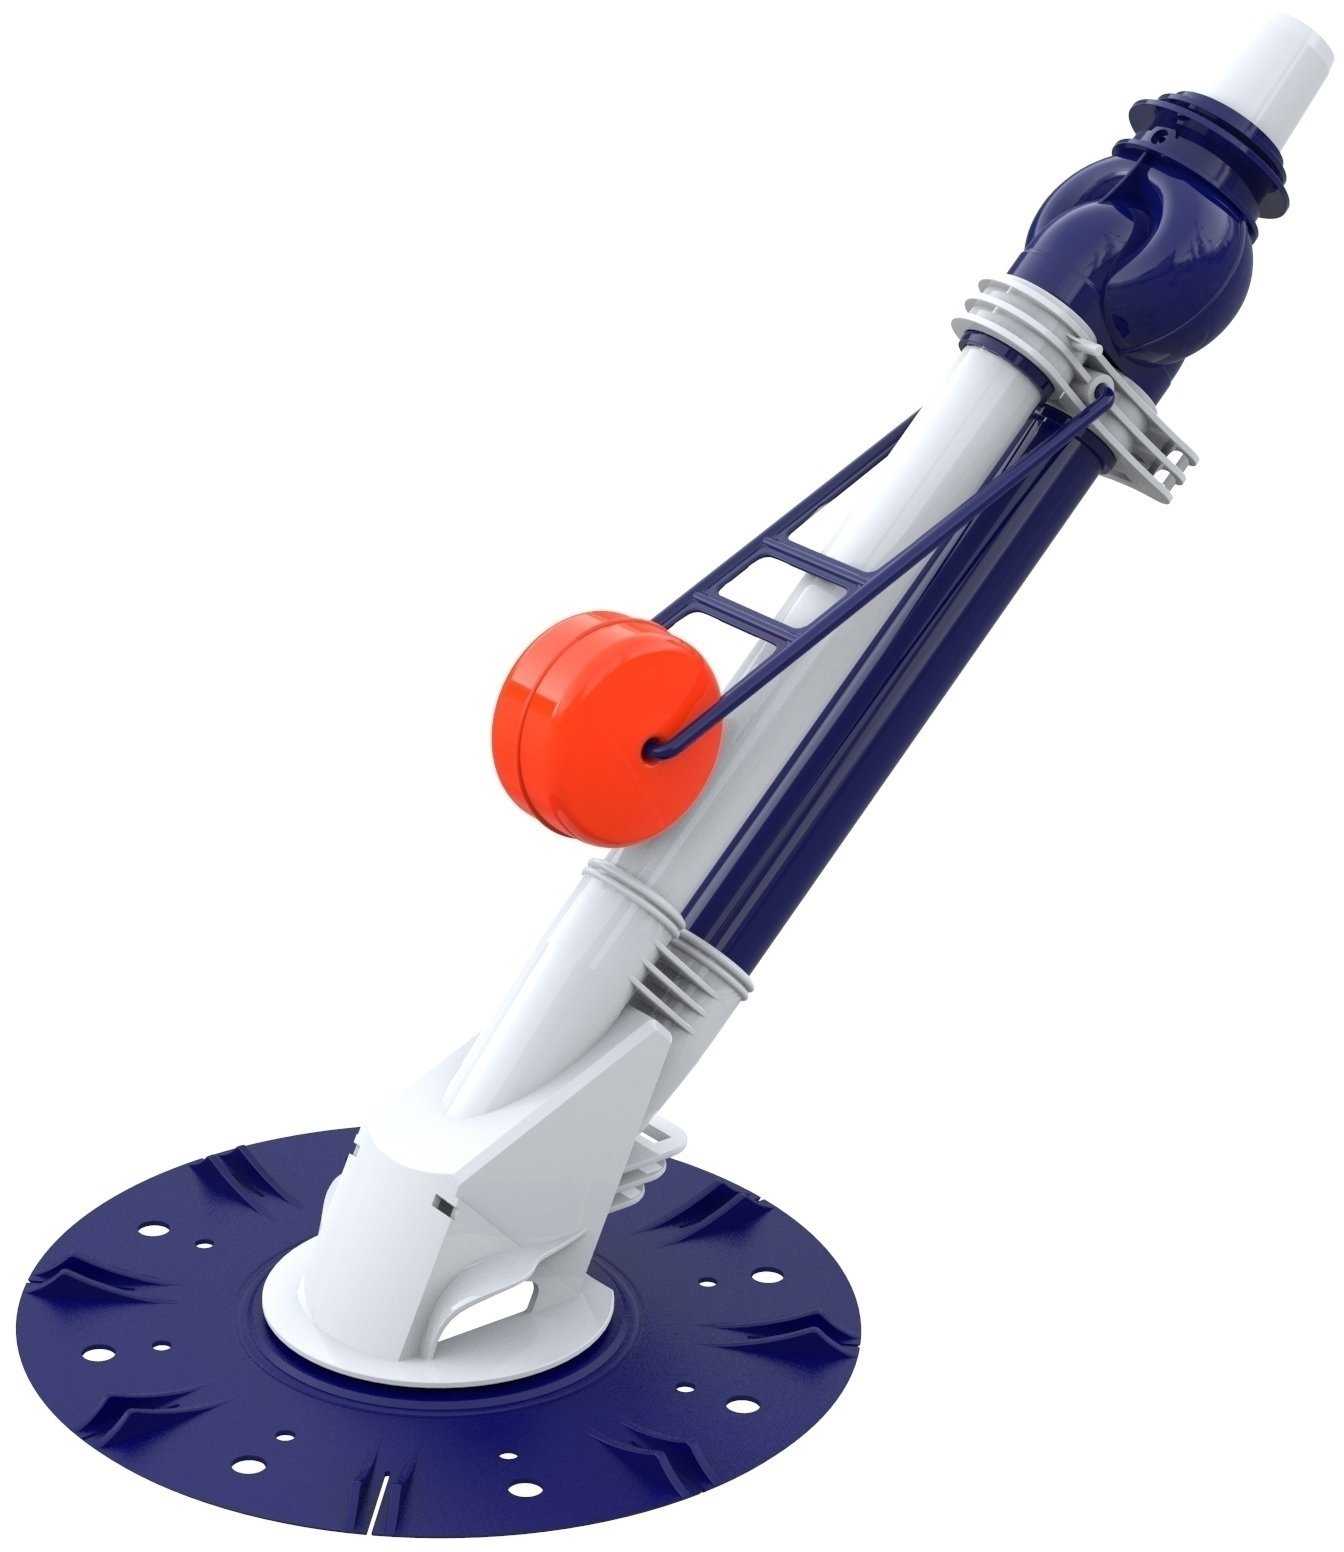 Filtracja, czyszczenie basenów i wody Marimex ProStar Vac Smart vacuum cleaner